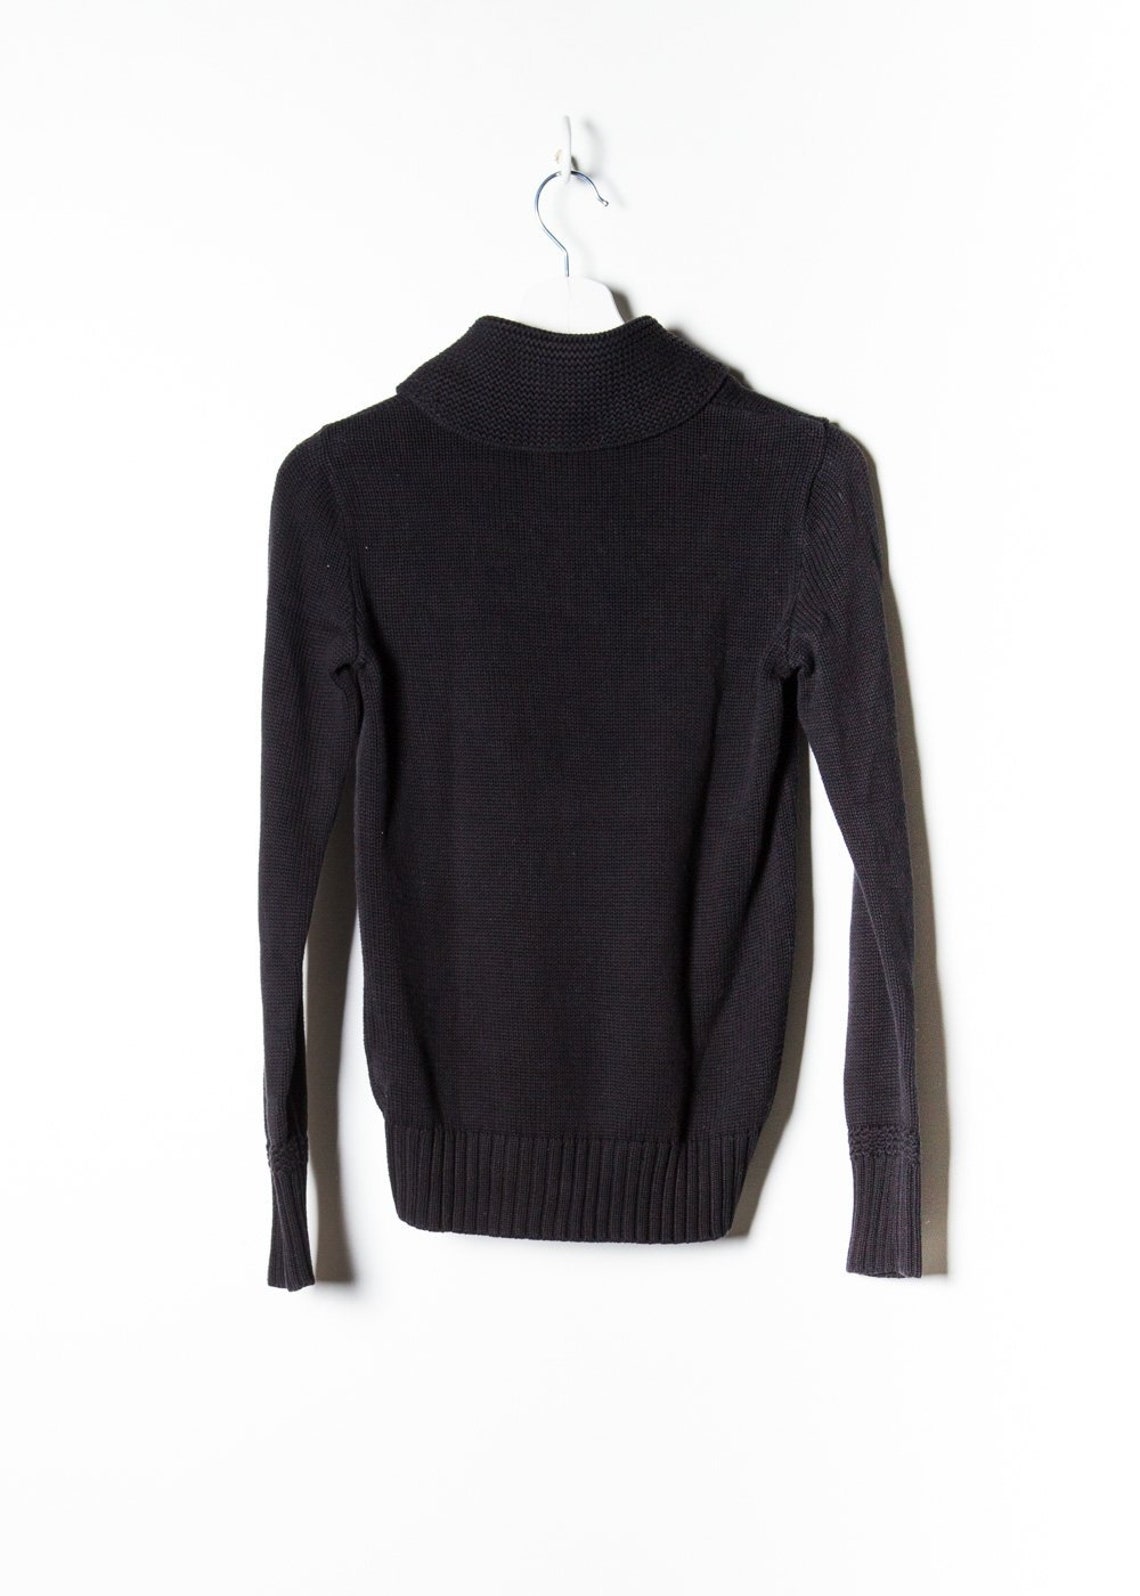 Ralph Lauren Women's Knit Sweater in Black | Etsy